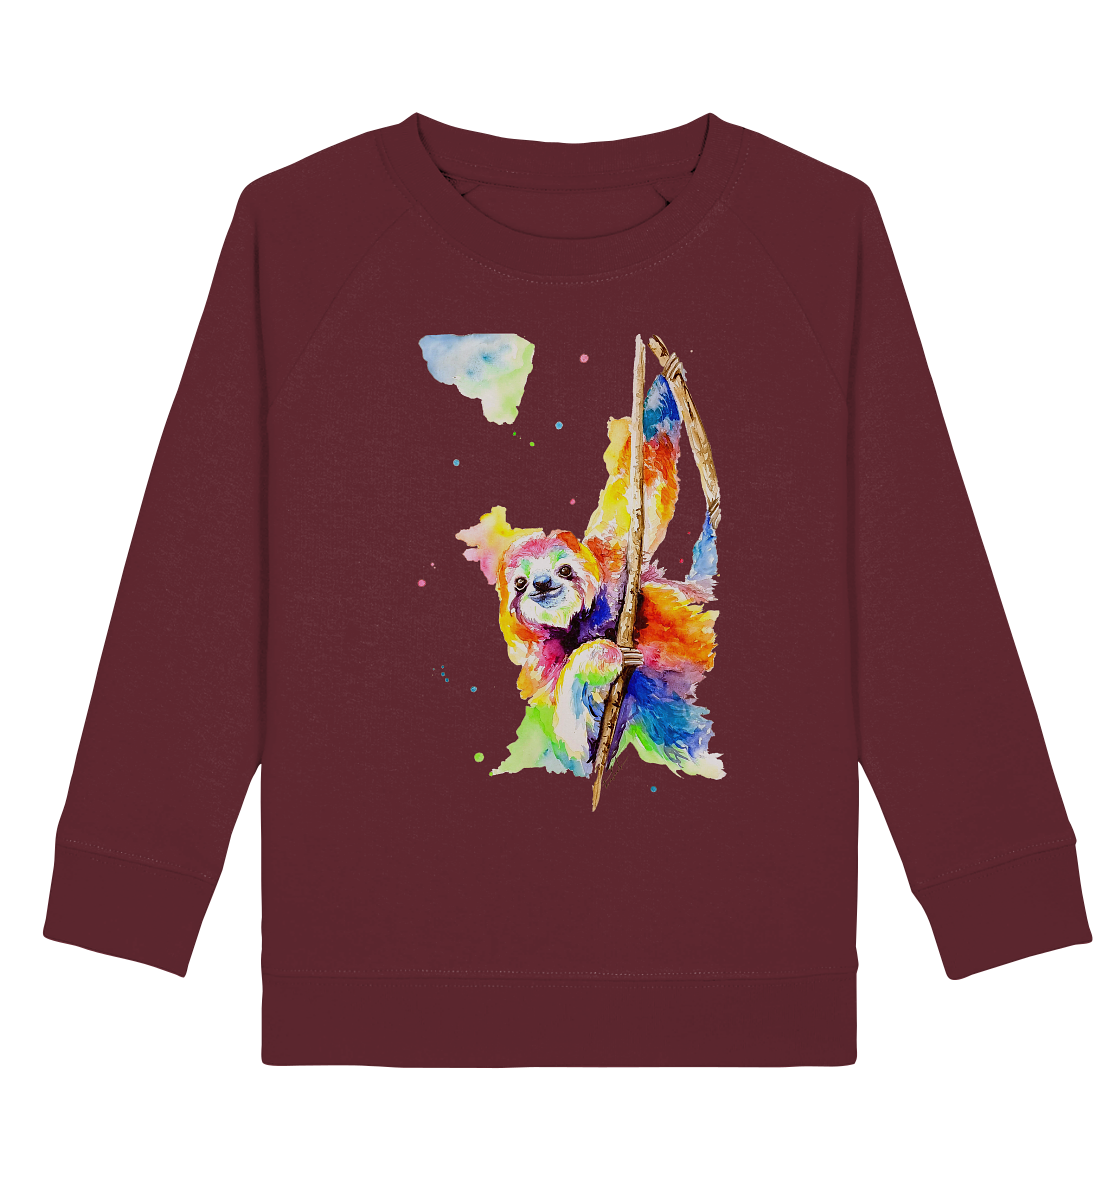 Buntes Faultier - Kids Organic Sweatshirt